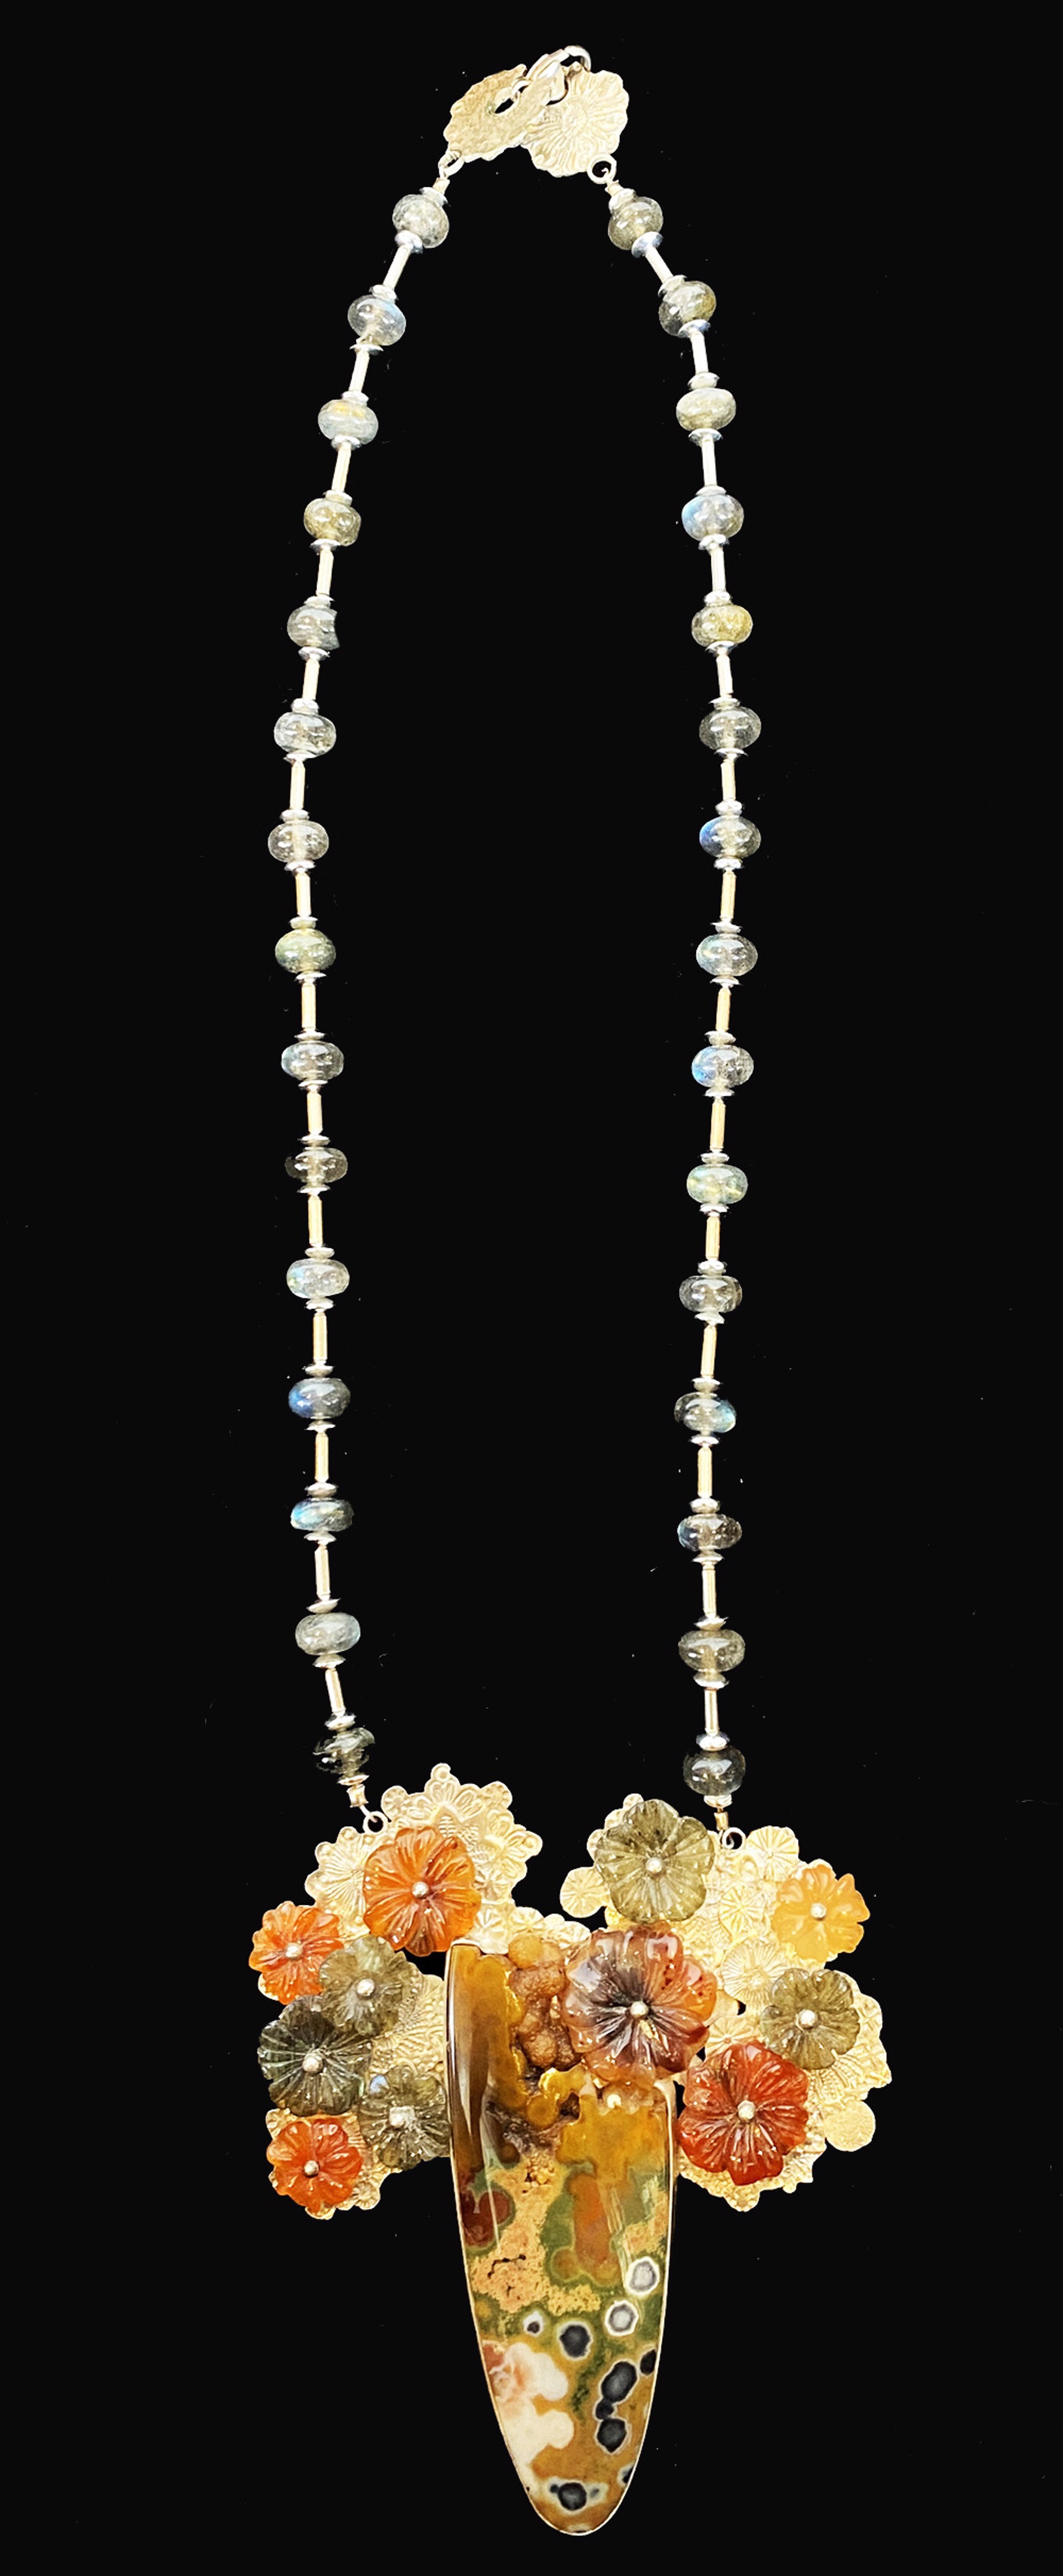 Necklace #3 by Marilynn Nicholson